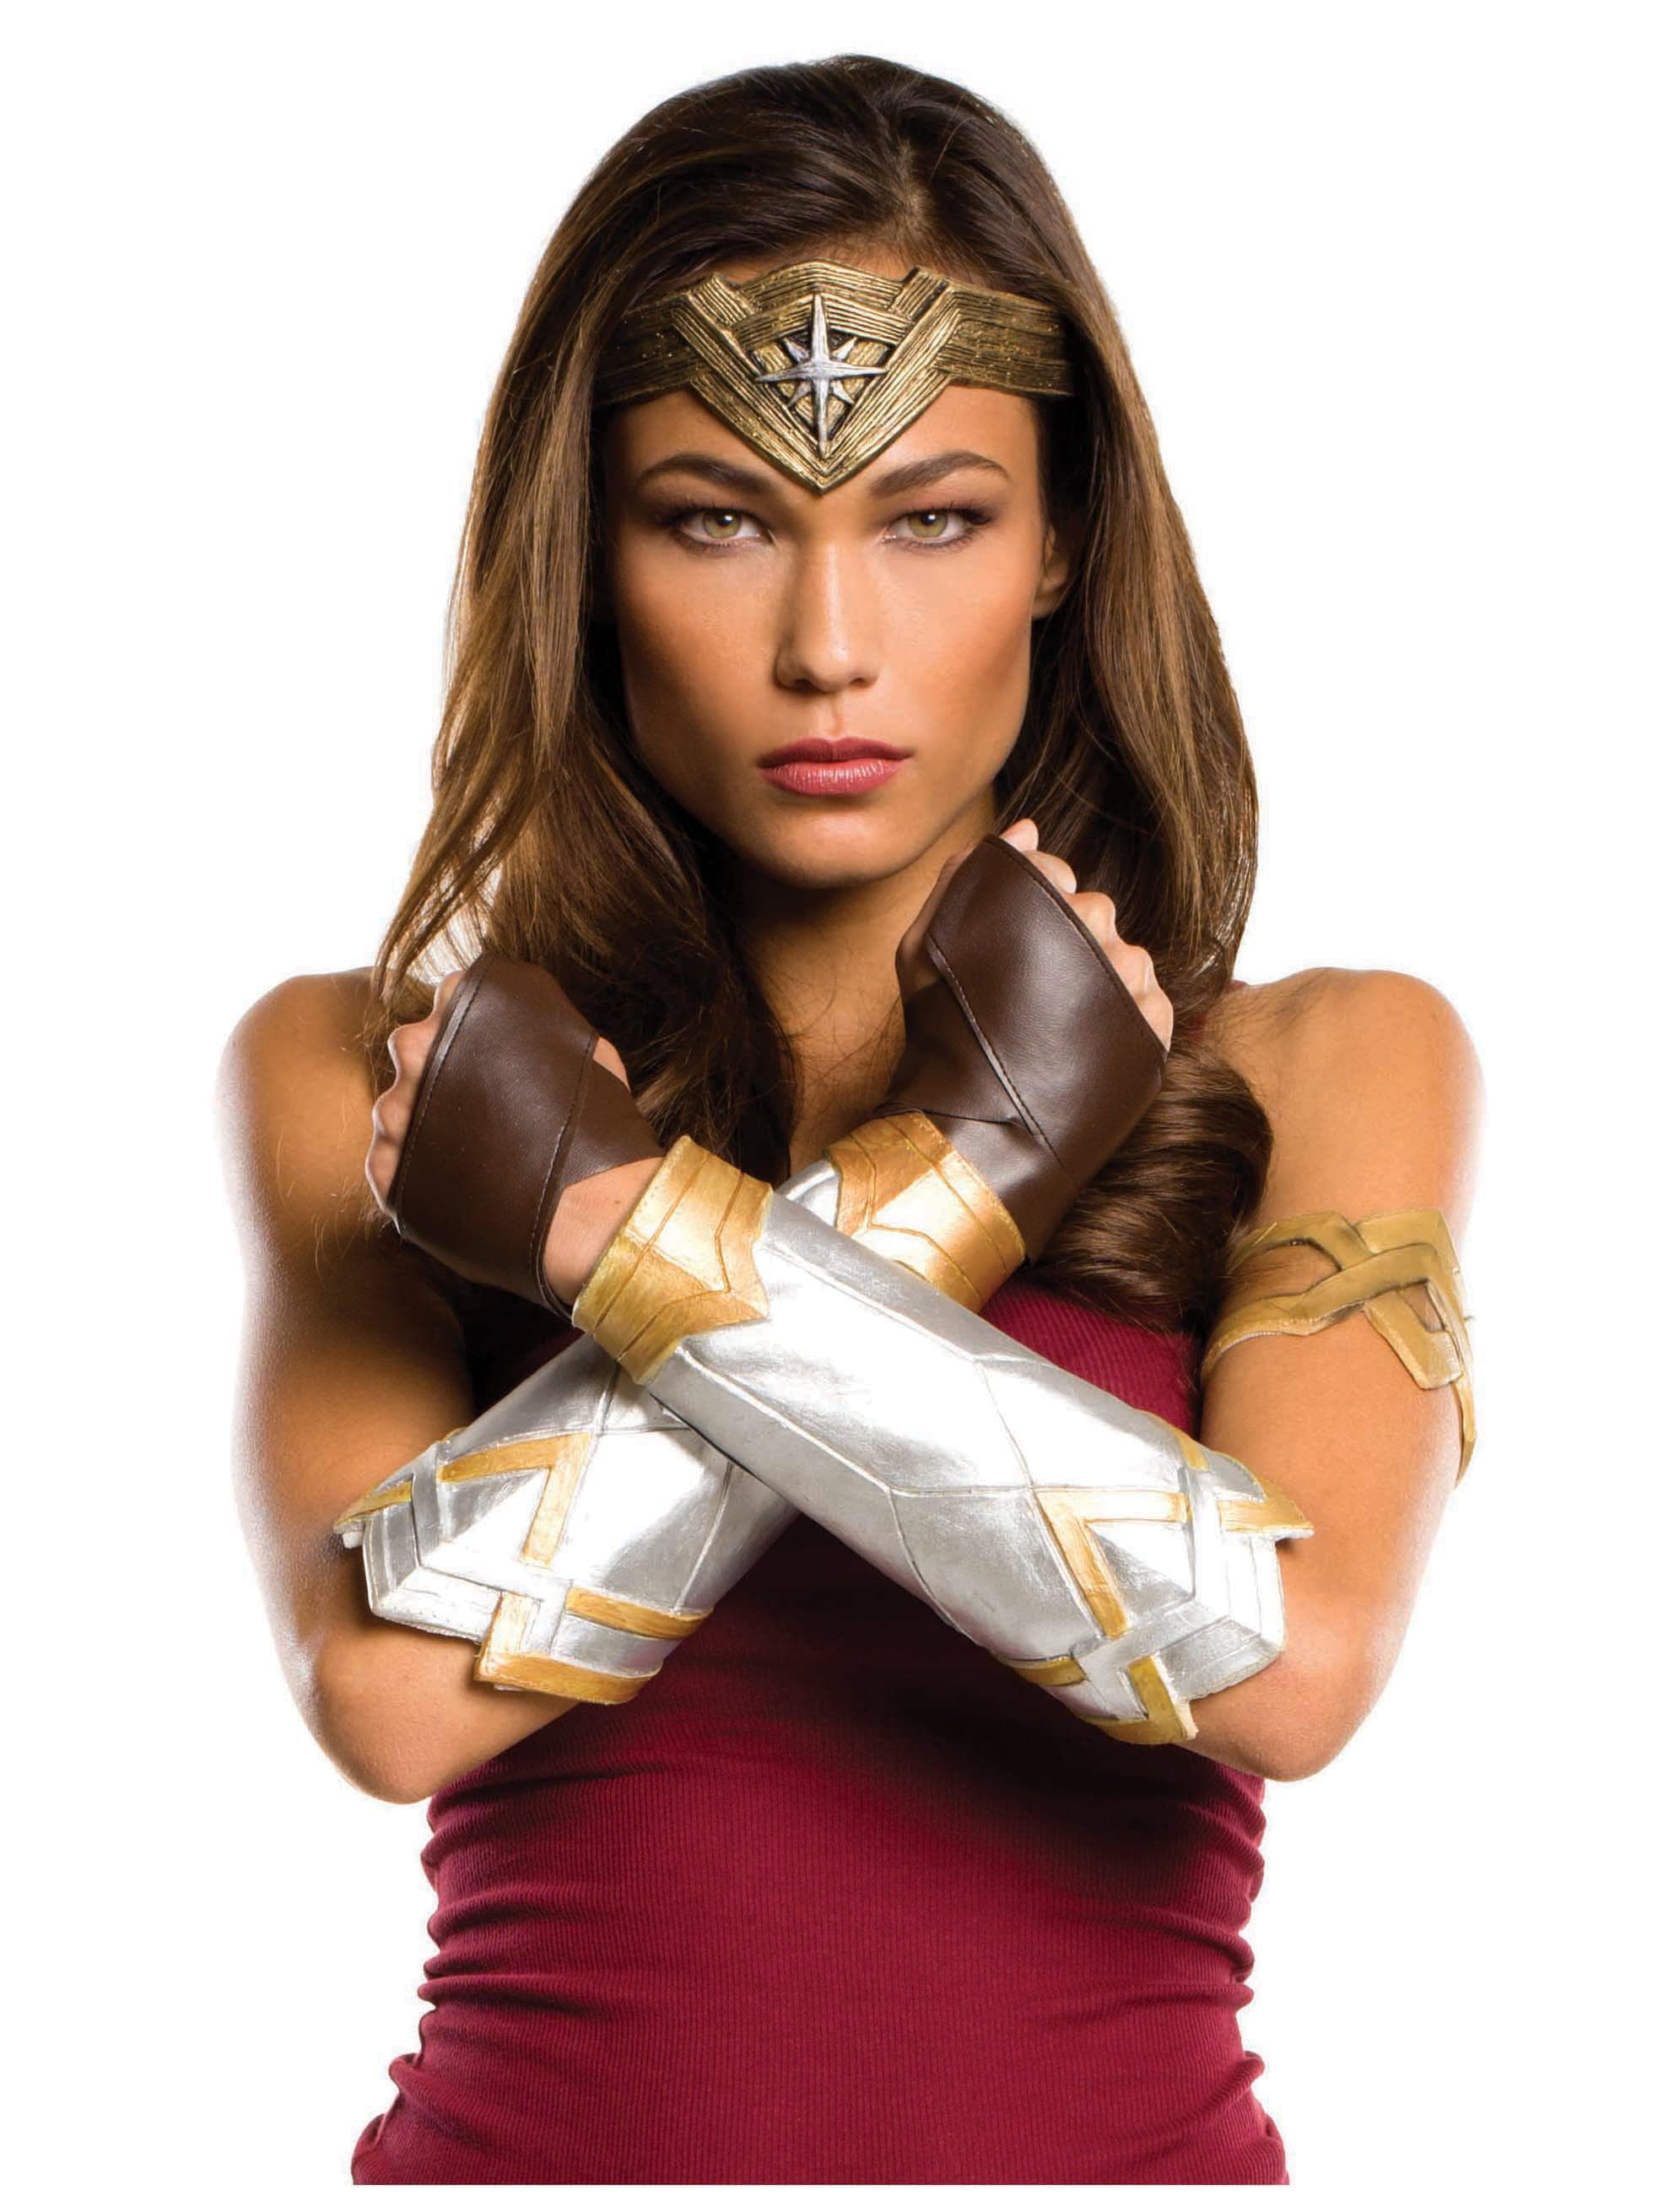 Women's Justice League Wonder Woman Accessory Set - costumes.com